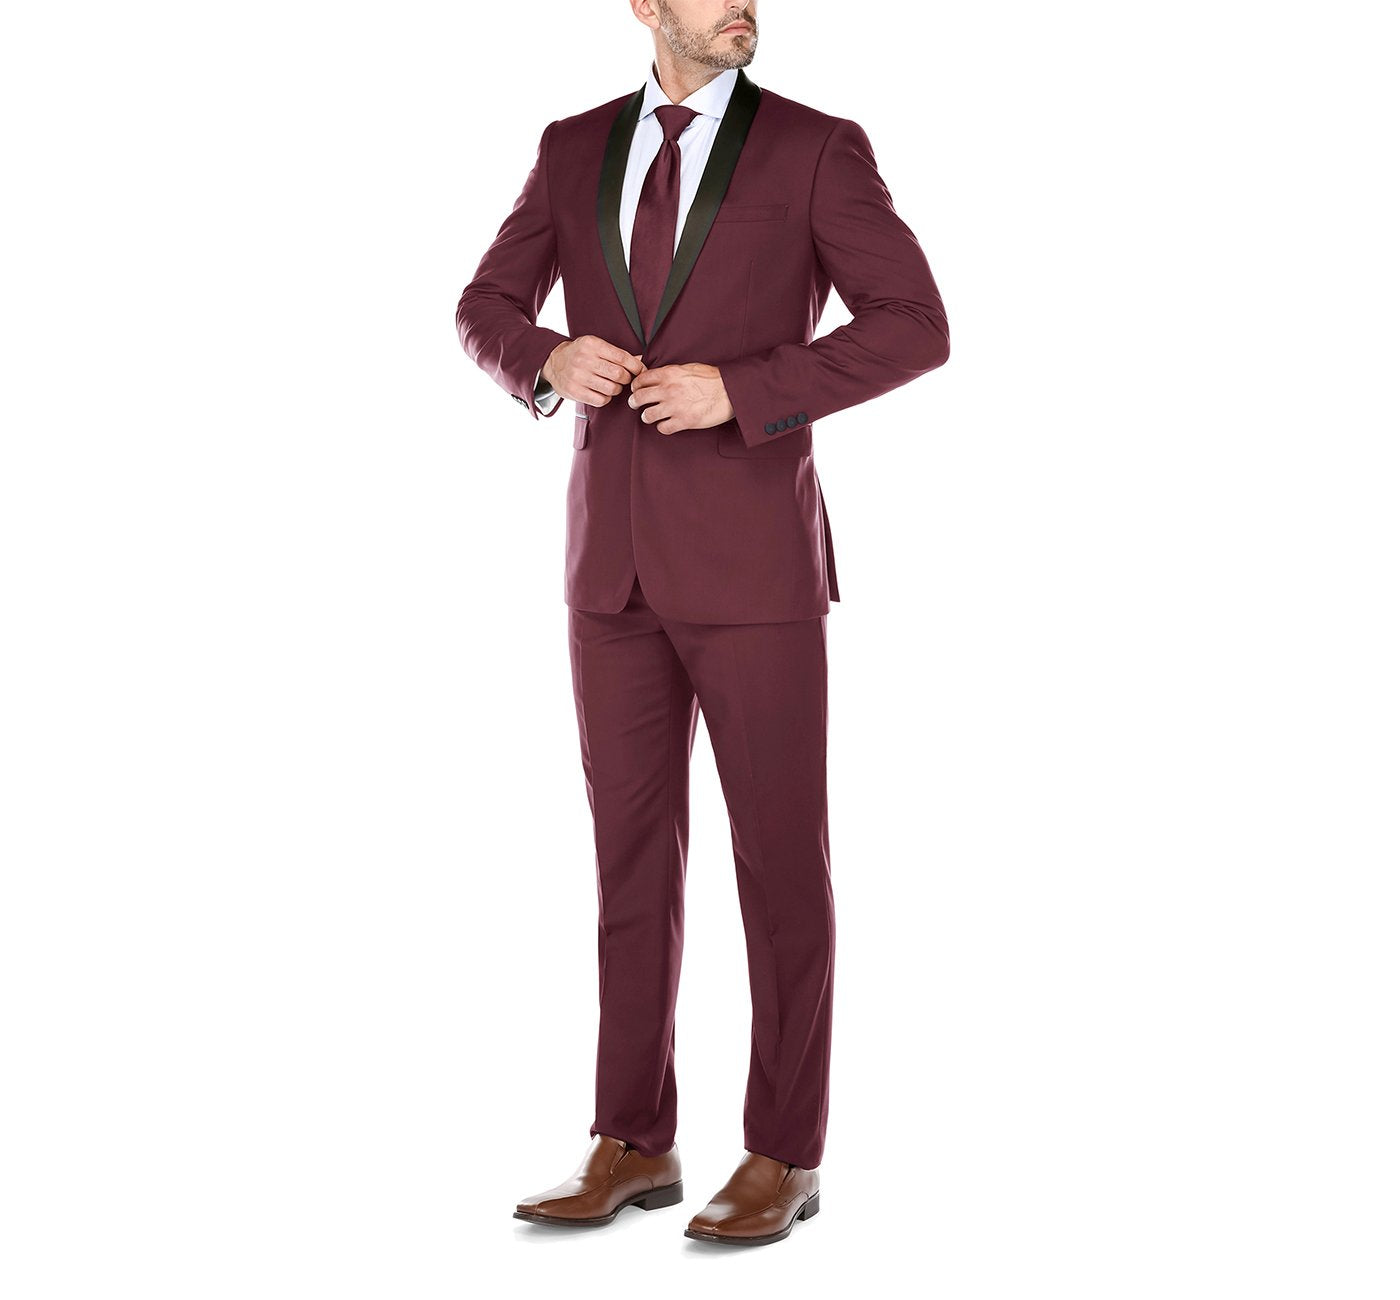 Men’s Slim Fit 2-Piece Shawl Lapel Tuxedo Suit 2